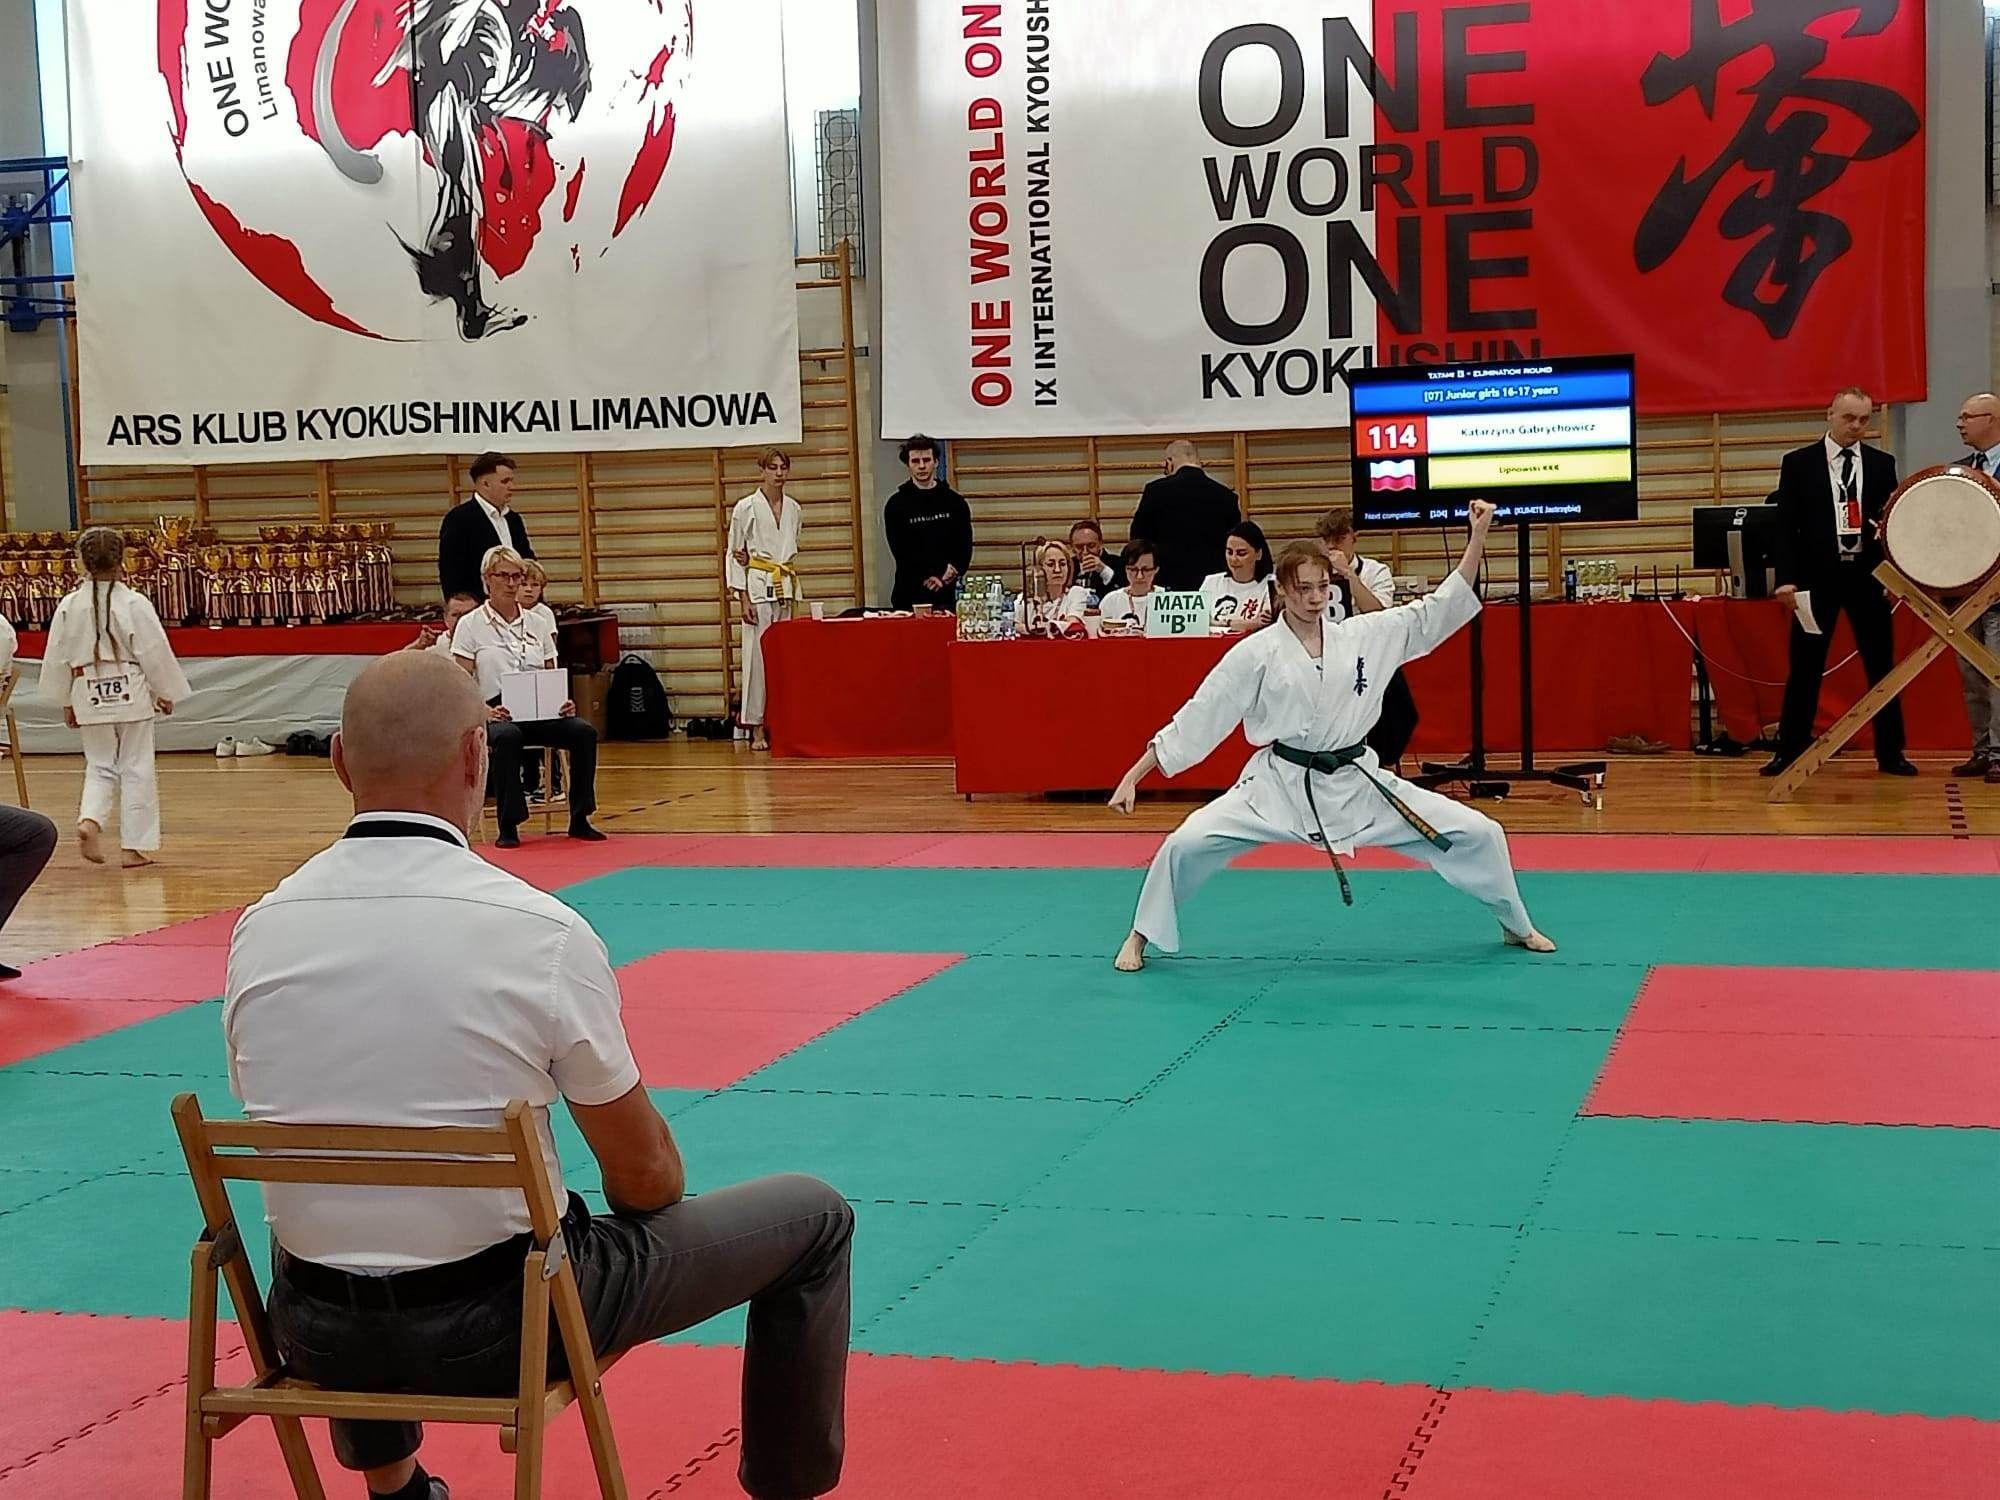 Zdj. nr. 1. IX Międzynarodowy Turniej One World One Kyokushin - 17 czerwca 2023 r., Limanowa